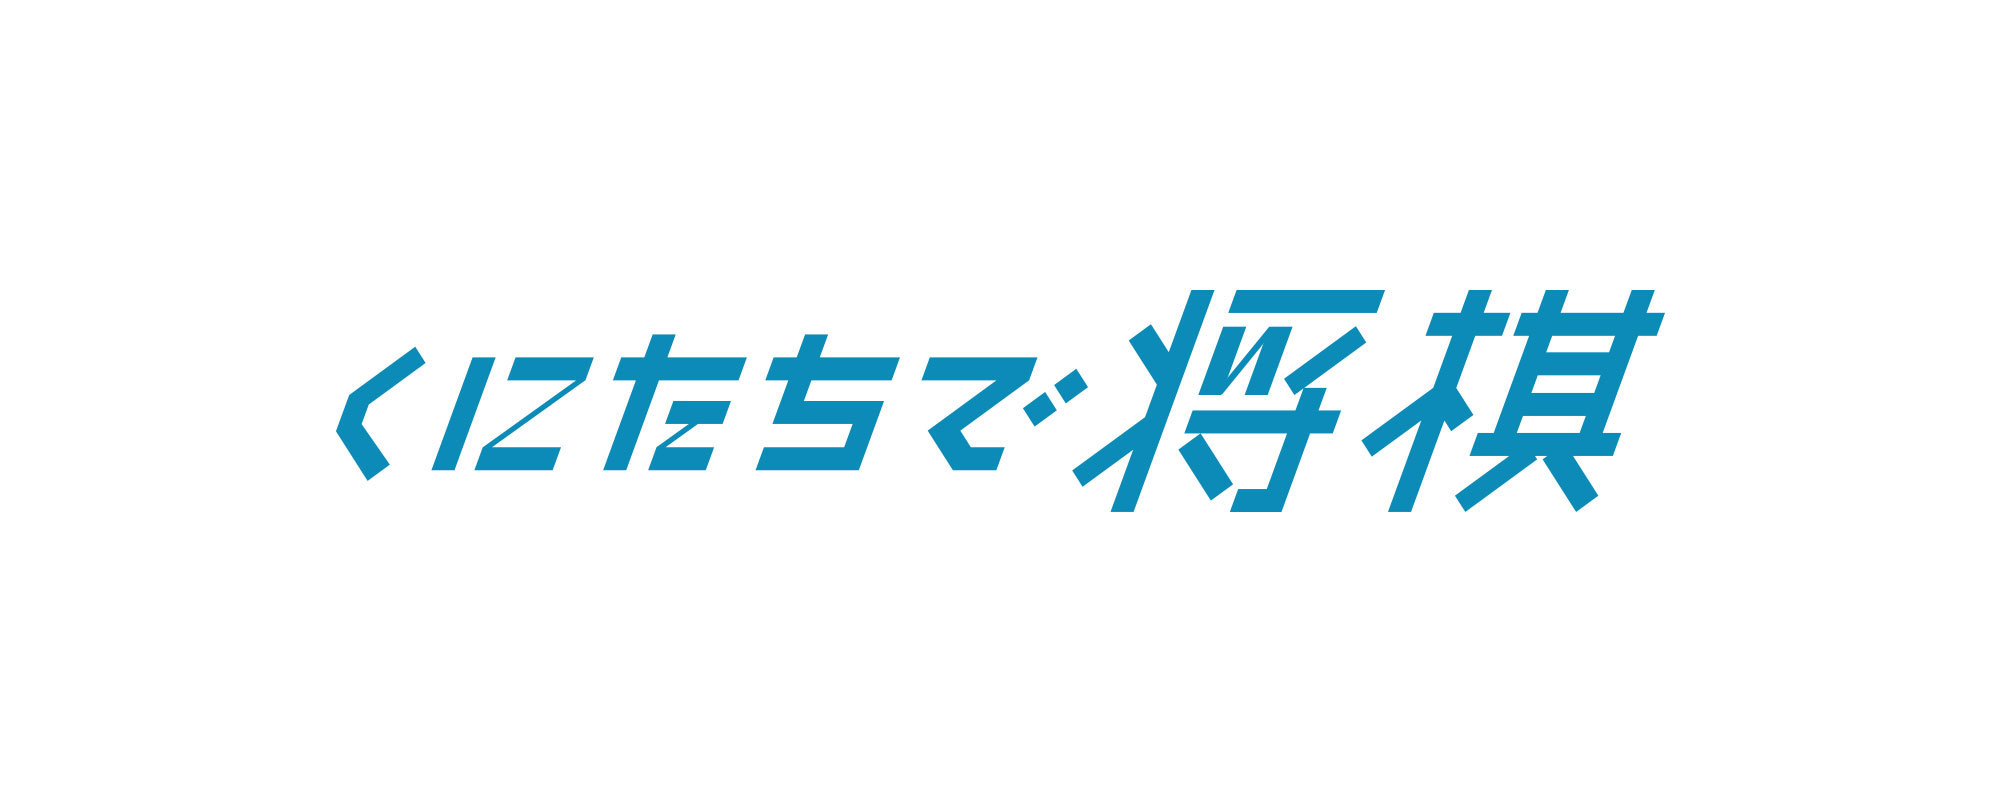 kunitachidesyogi_logo2